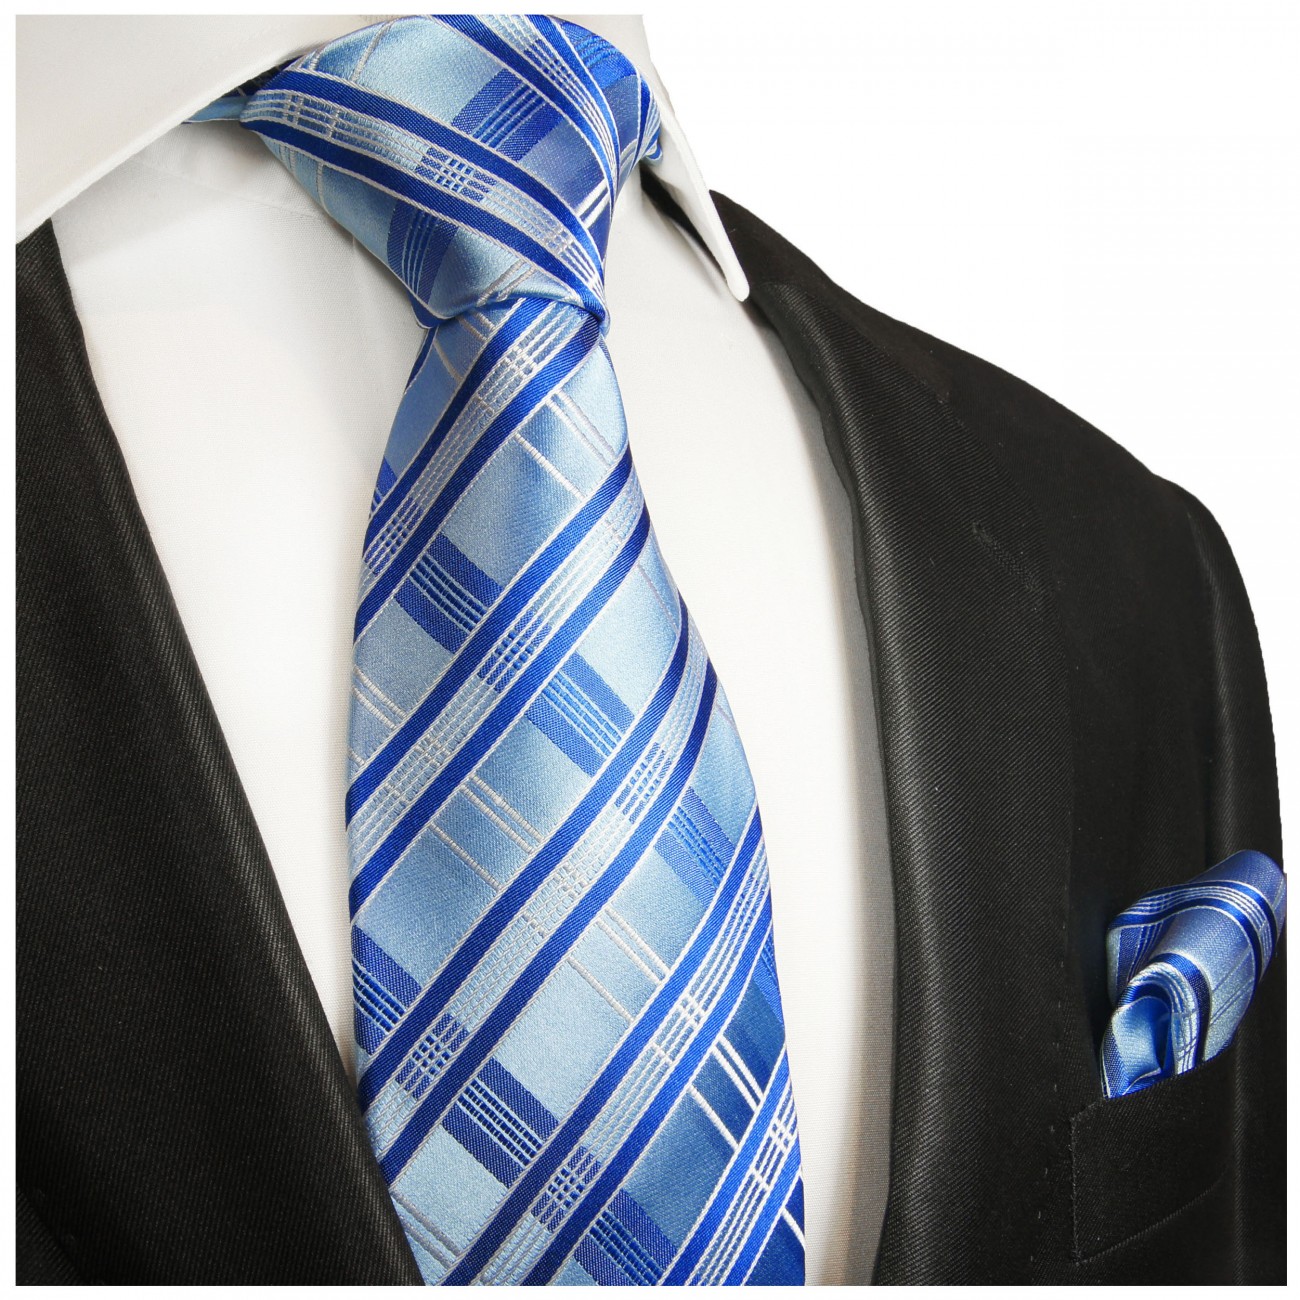 Krawatte hellblau und dunkelblau mit Einstecktuch gestreift 2018